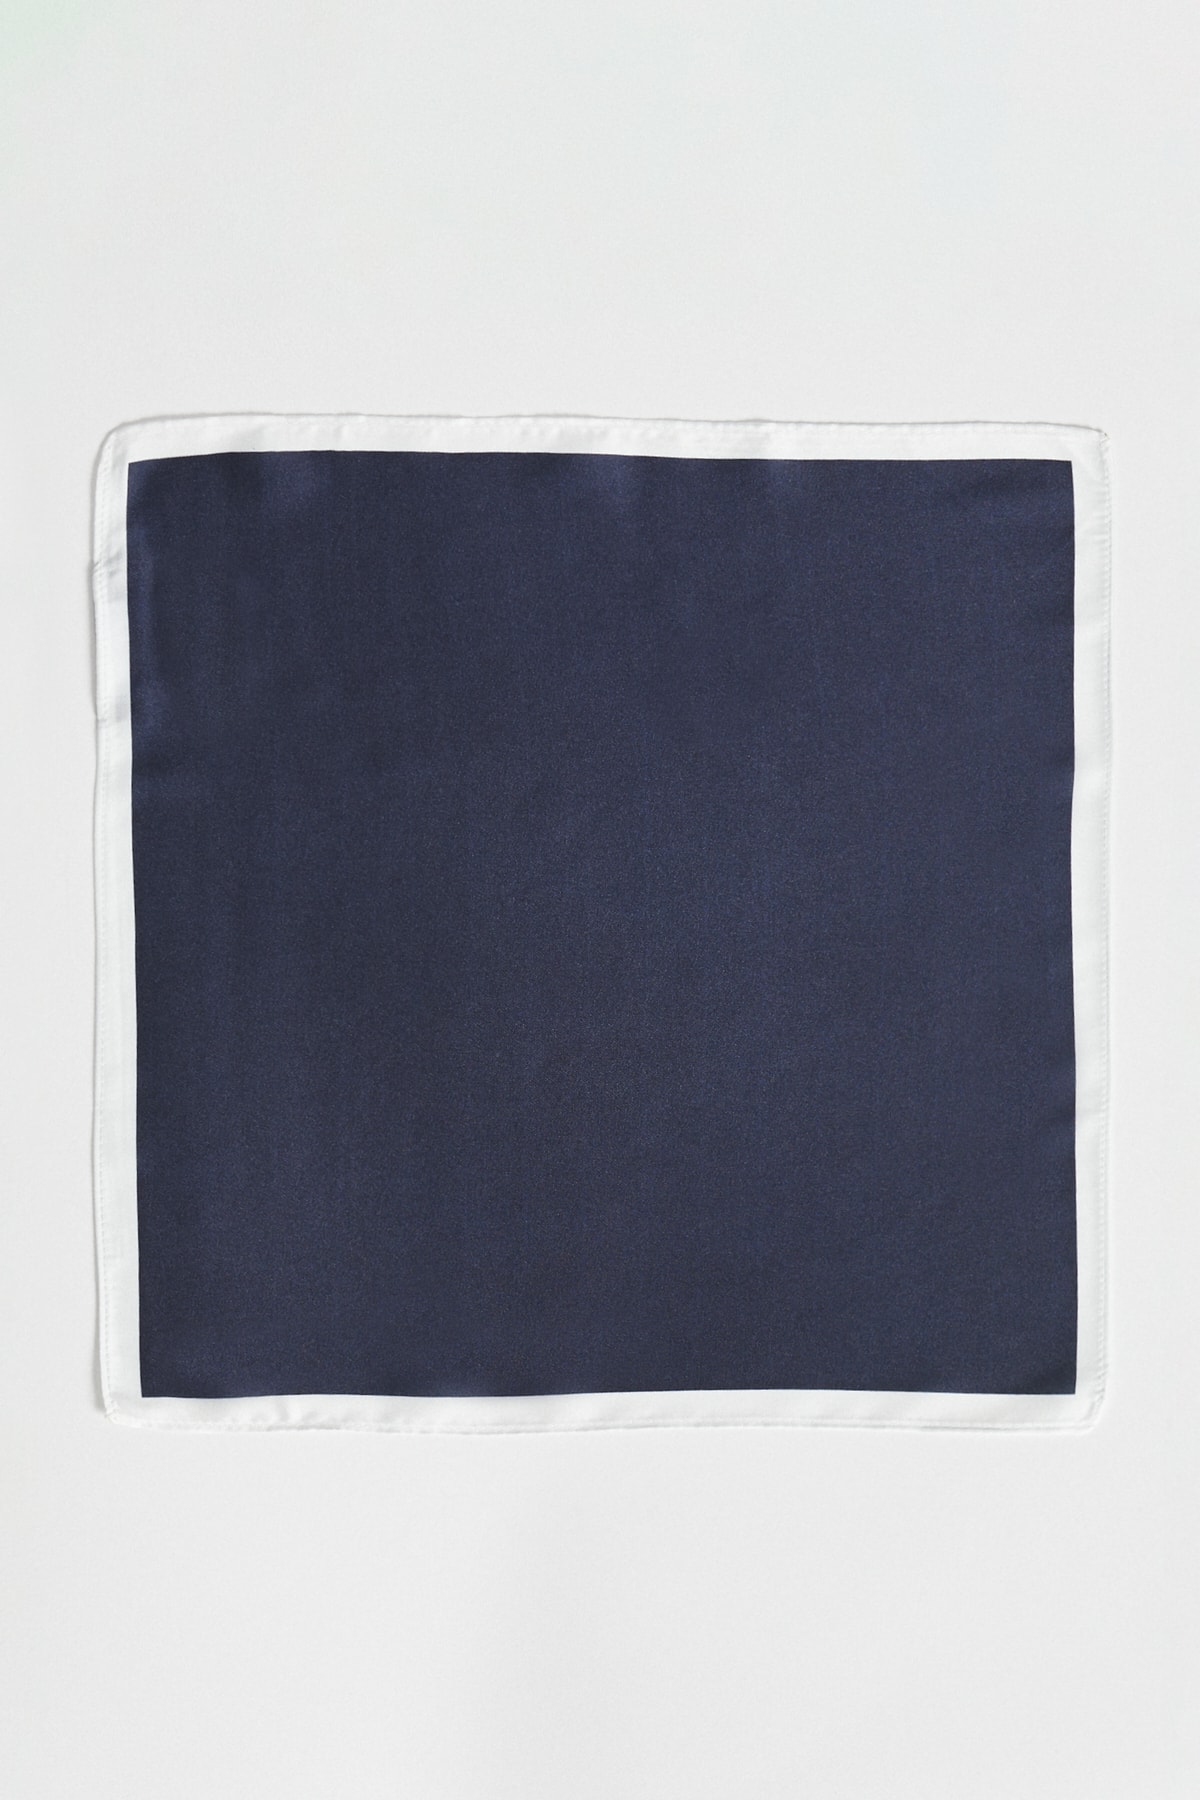 ALTINYILDIZ CLASSICS Men's Navy Blue Handkerchief